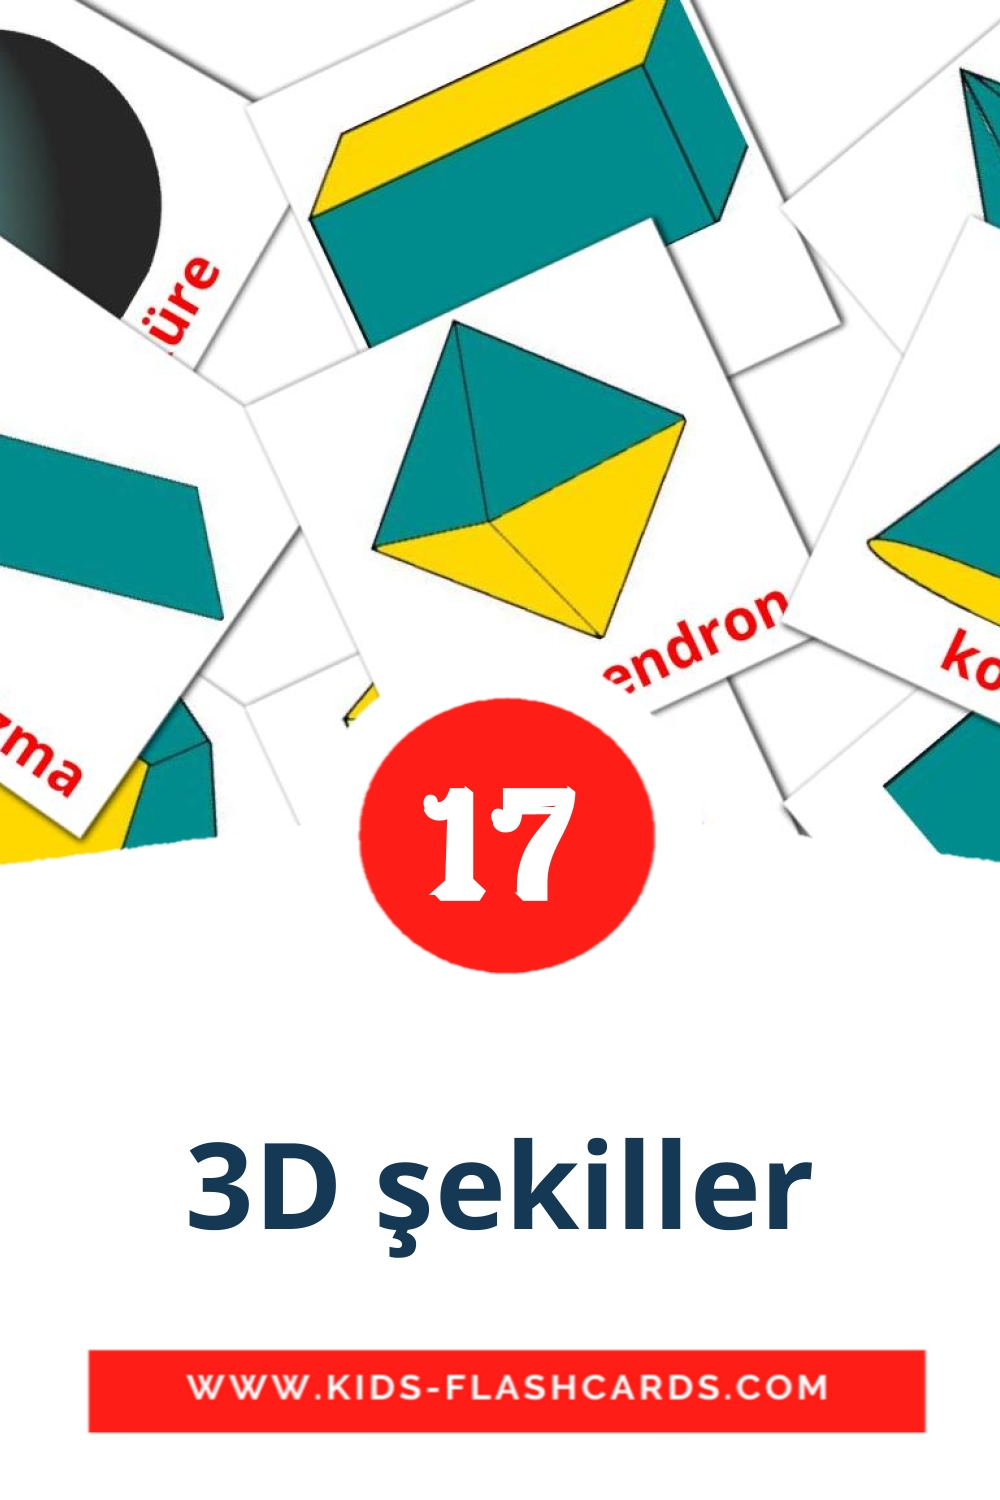 17 Cartões com Imagens de 3D şekiller para Jardim de Infância em turco